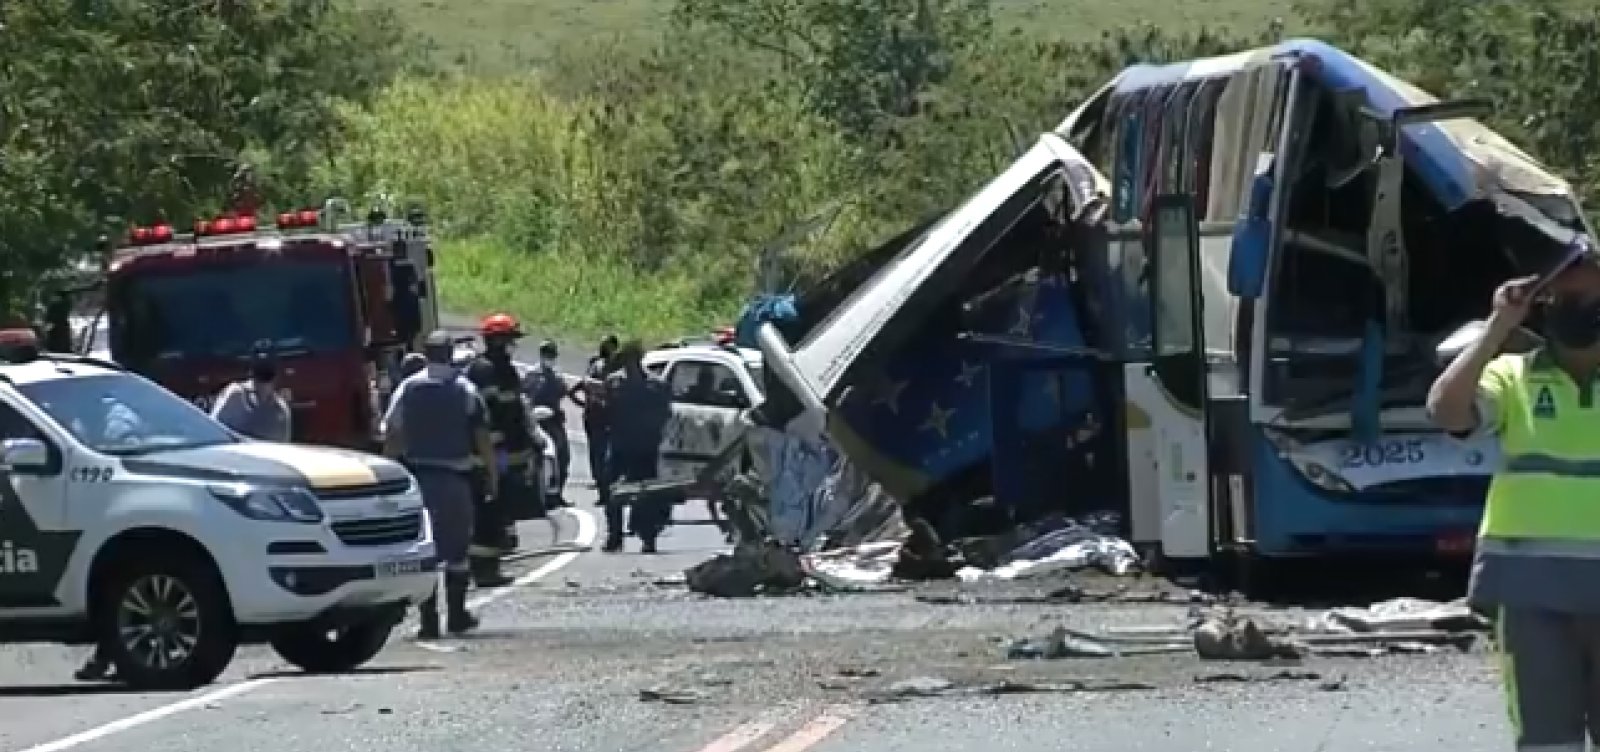 Acidente em rodovia de SP deixa 40 mortos e 11 feridos, diz PM